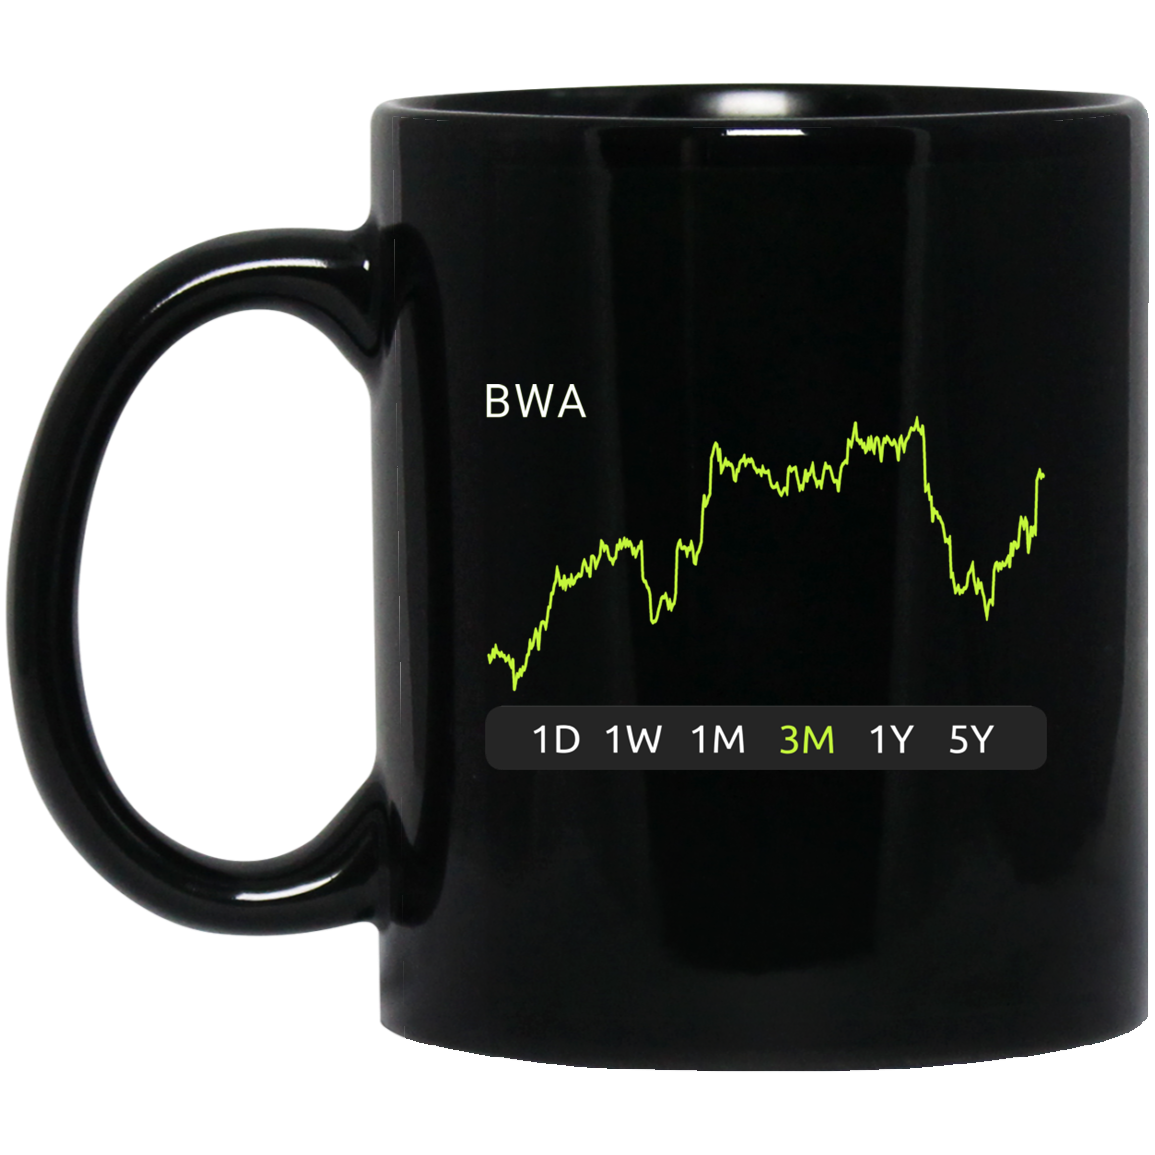 BWA Stock 3m Mug